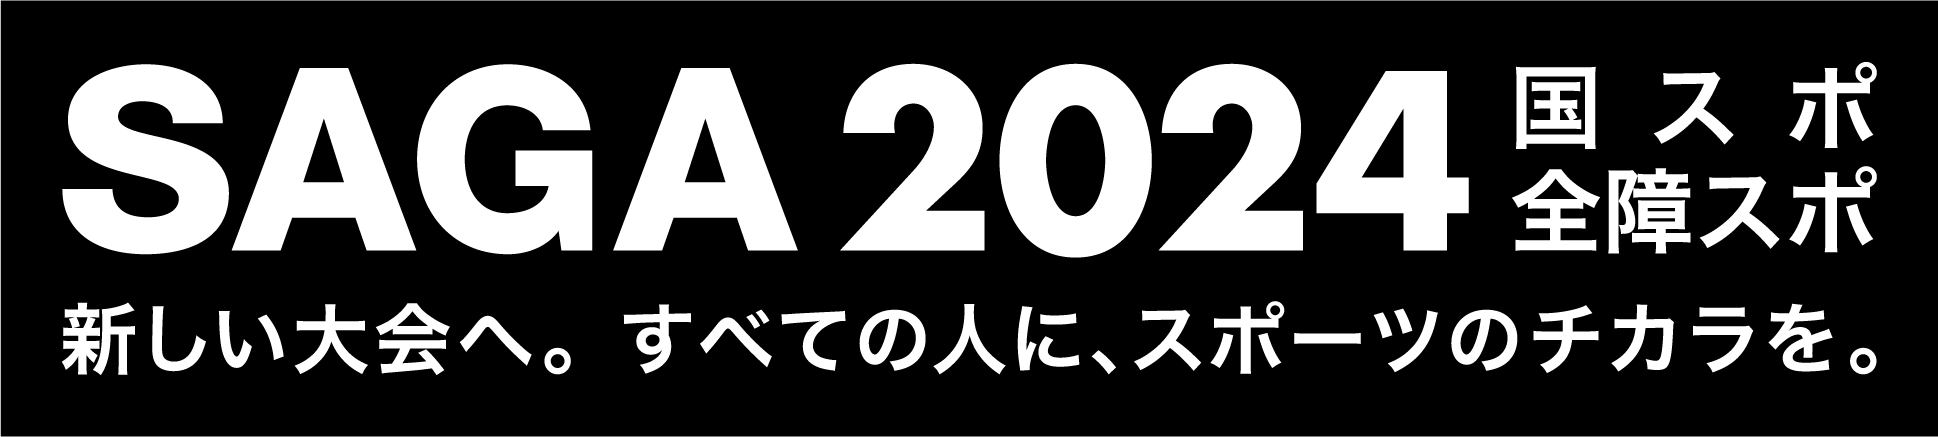 SAGA 20224 国スポ全障スポ